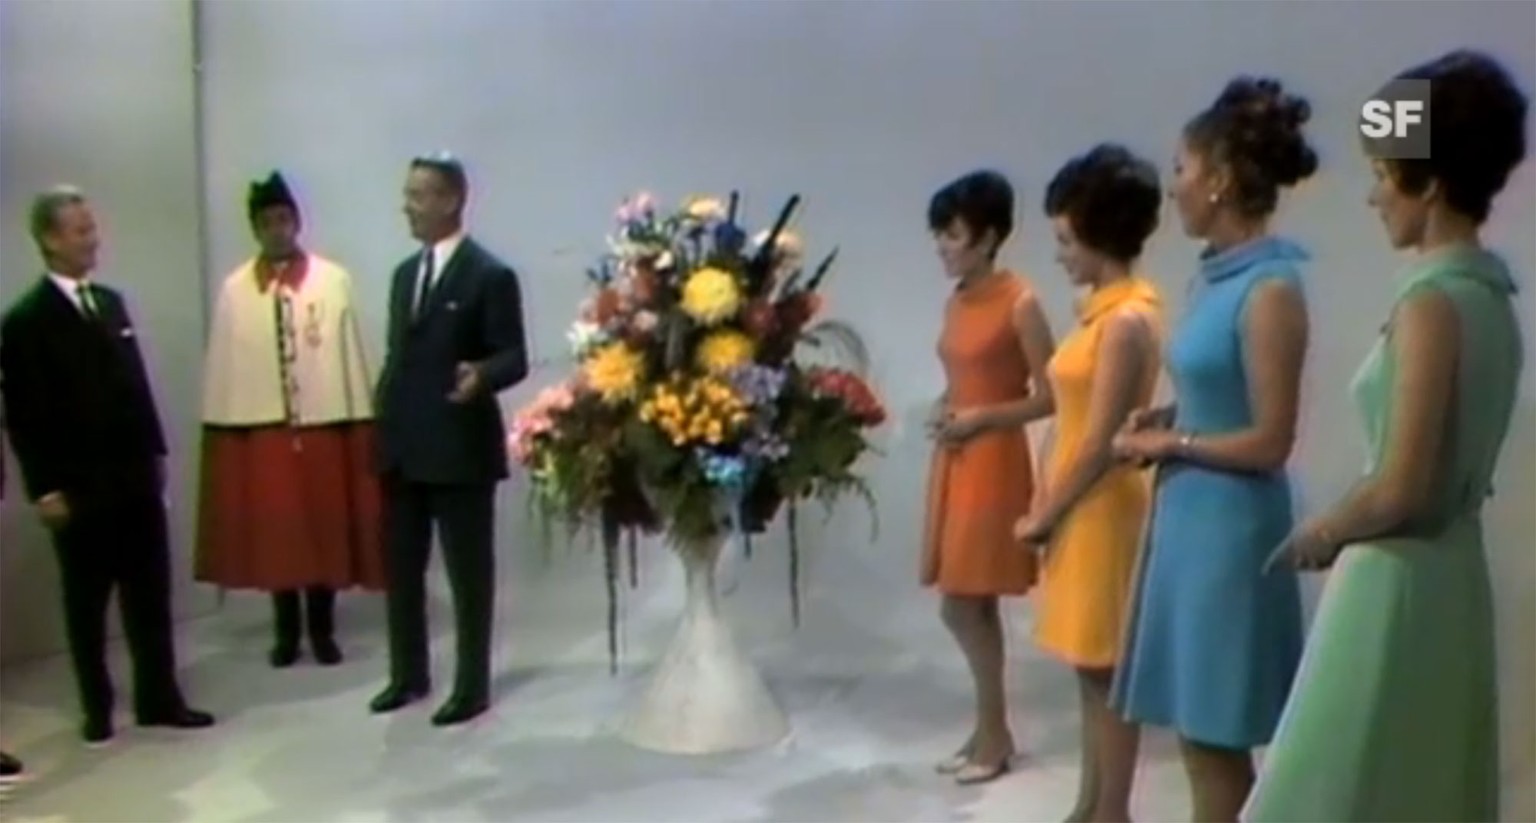 Standbild aus der ersten regulären Sendung in Farbe, die am 1. Oktober 1968 ausgestrahlt wurde.